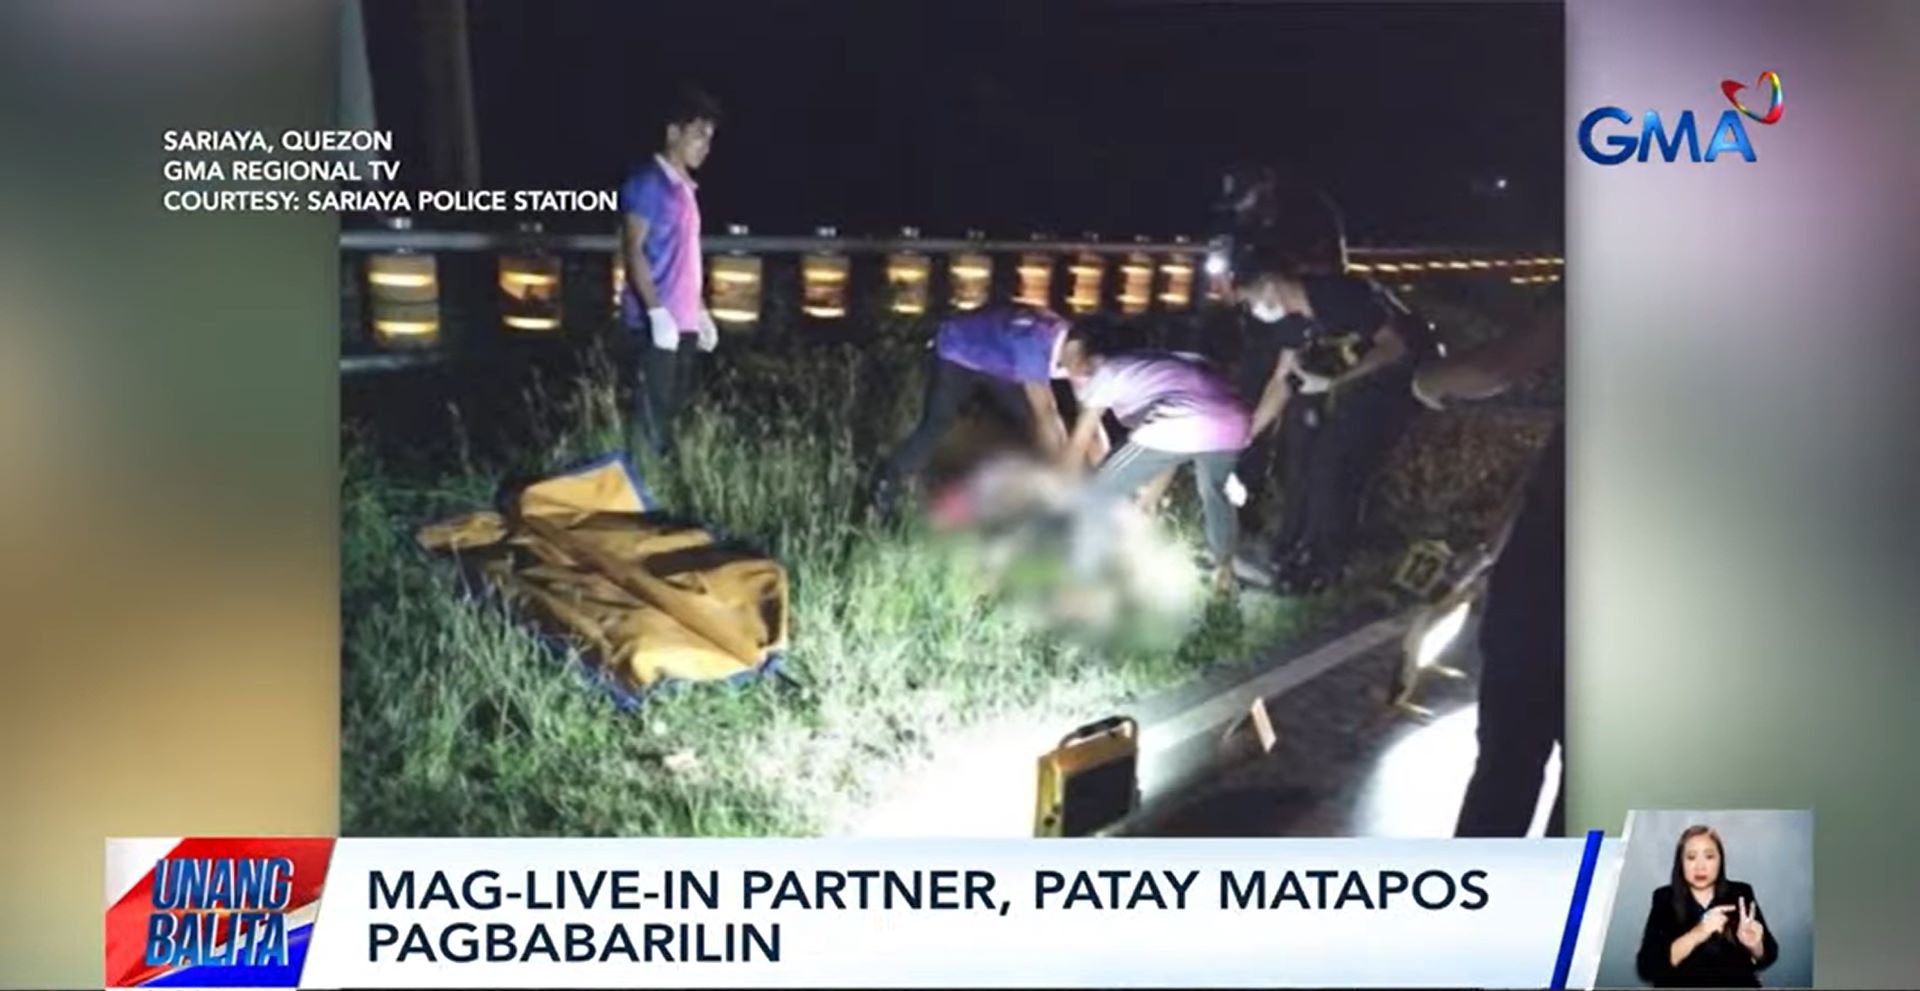 Mag-live-in partner na mangangalakal, patay nang pagbabarilin sa Quezon
 thumbnail